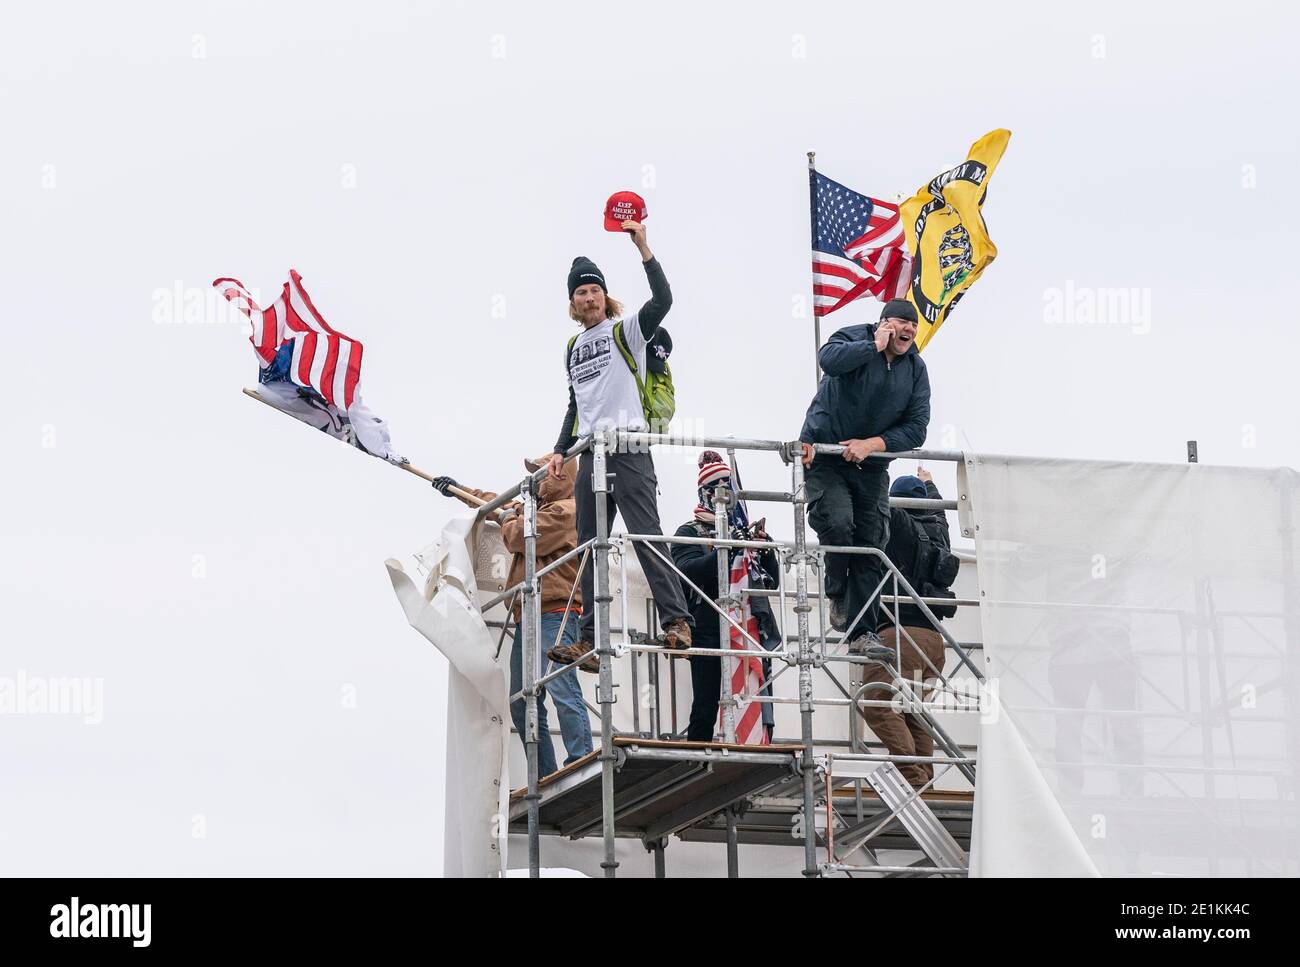 Washington, DC - 6 janvier 2021 : des manifestants pro-Trump vus sur des sangsues au bâtiment du Capitole construit pour l'inauguration du 46e président Joe Biden Banque D'Images